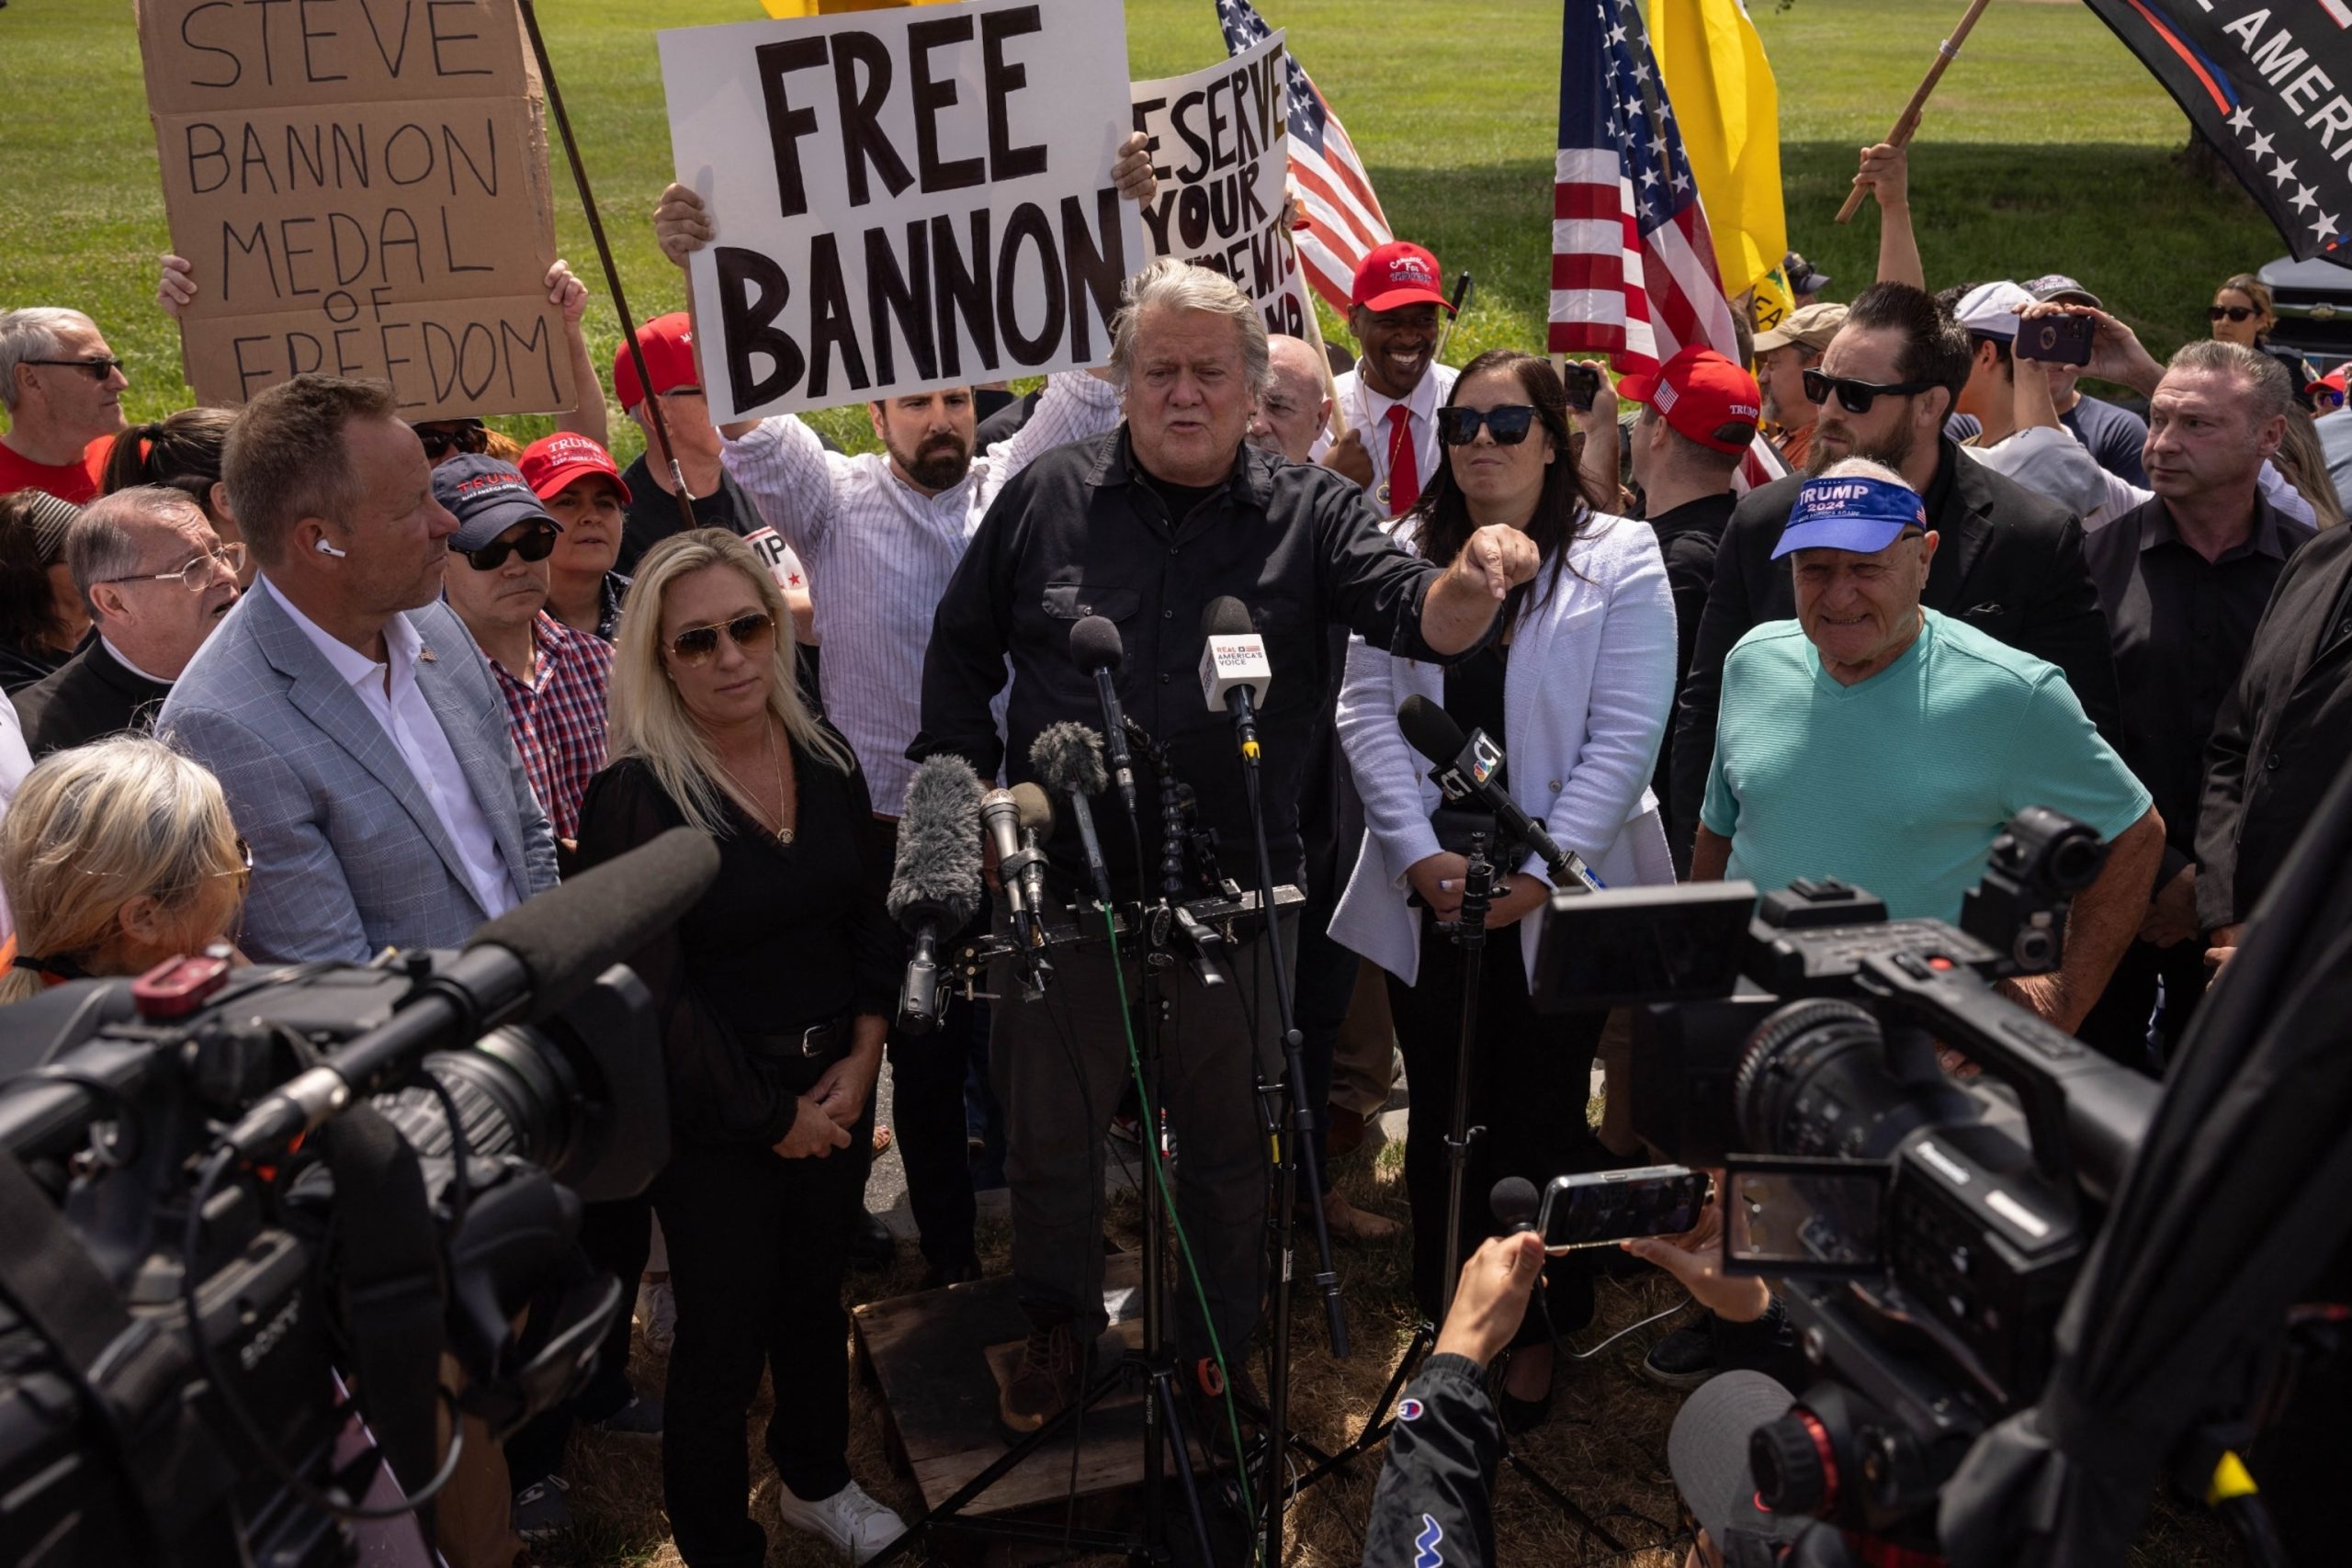 Steve Bannon begins serving prison sentence for contempt of Congress